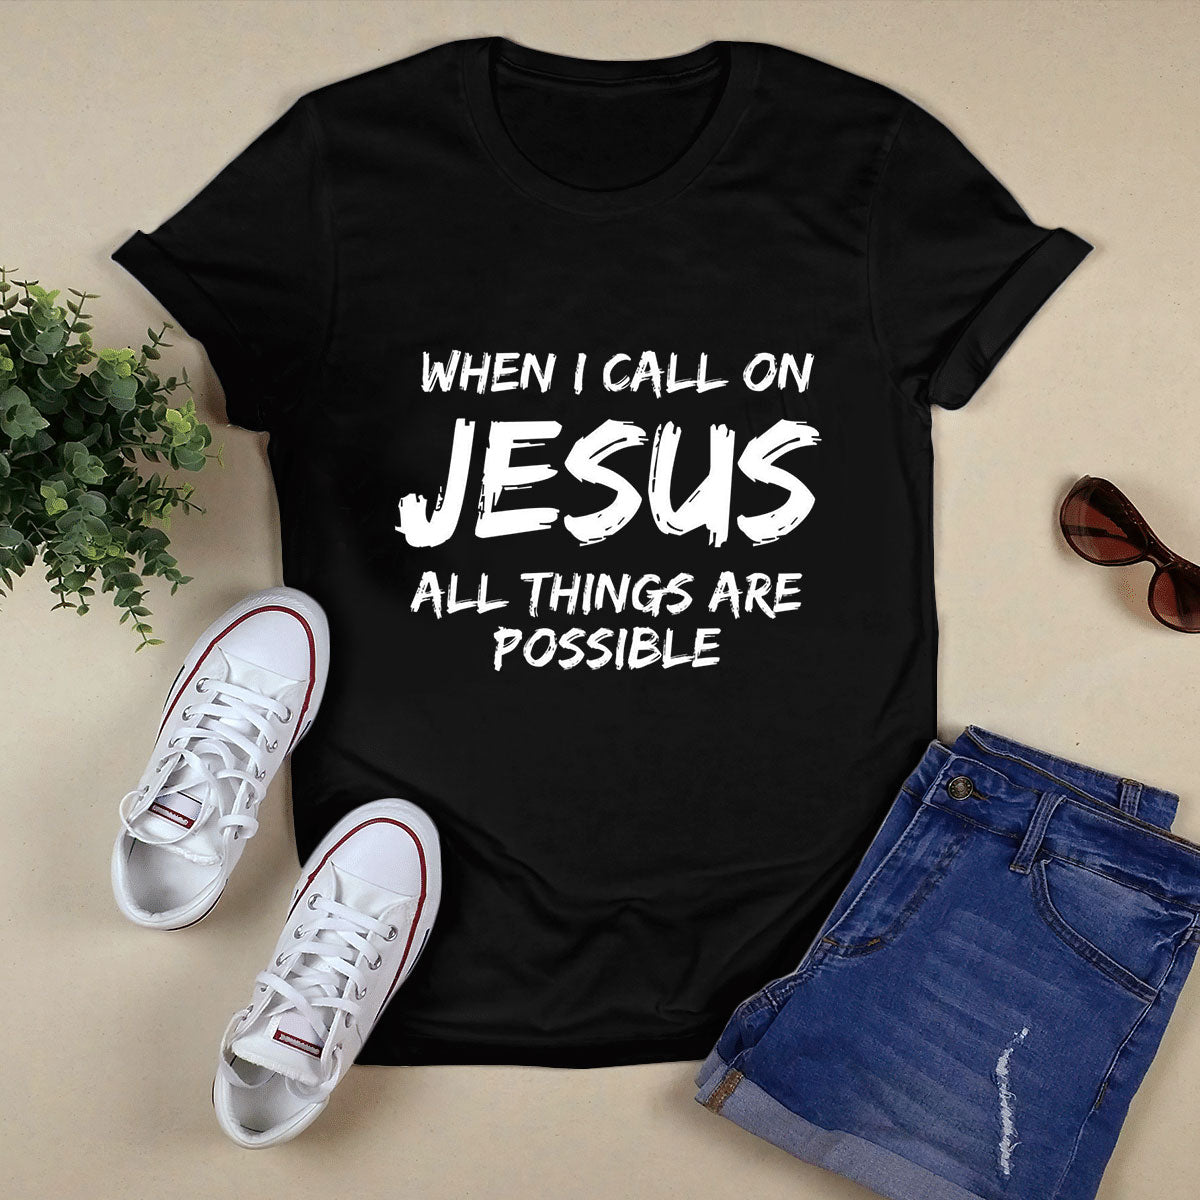 I Love Jesus Black T-Shirt N